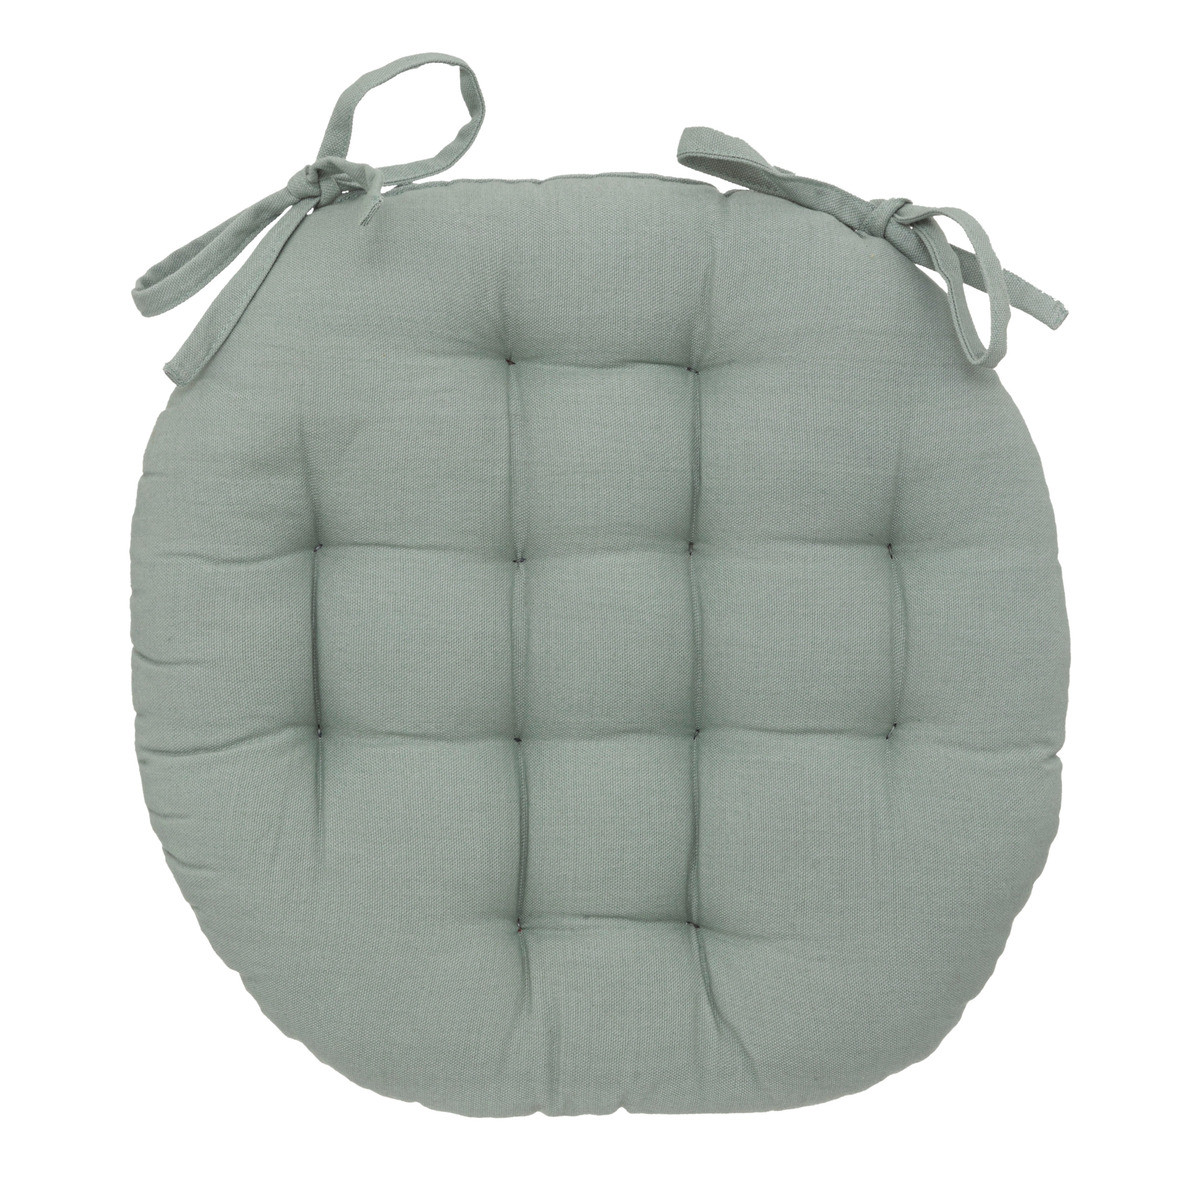 Galette de chaise ronde Vert céladon D 38 cm - Galettes de chaise -  Décomania